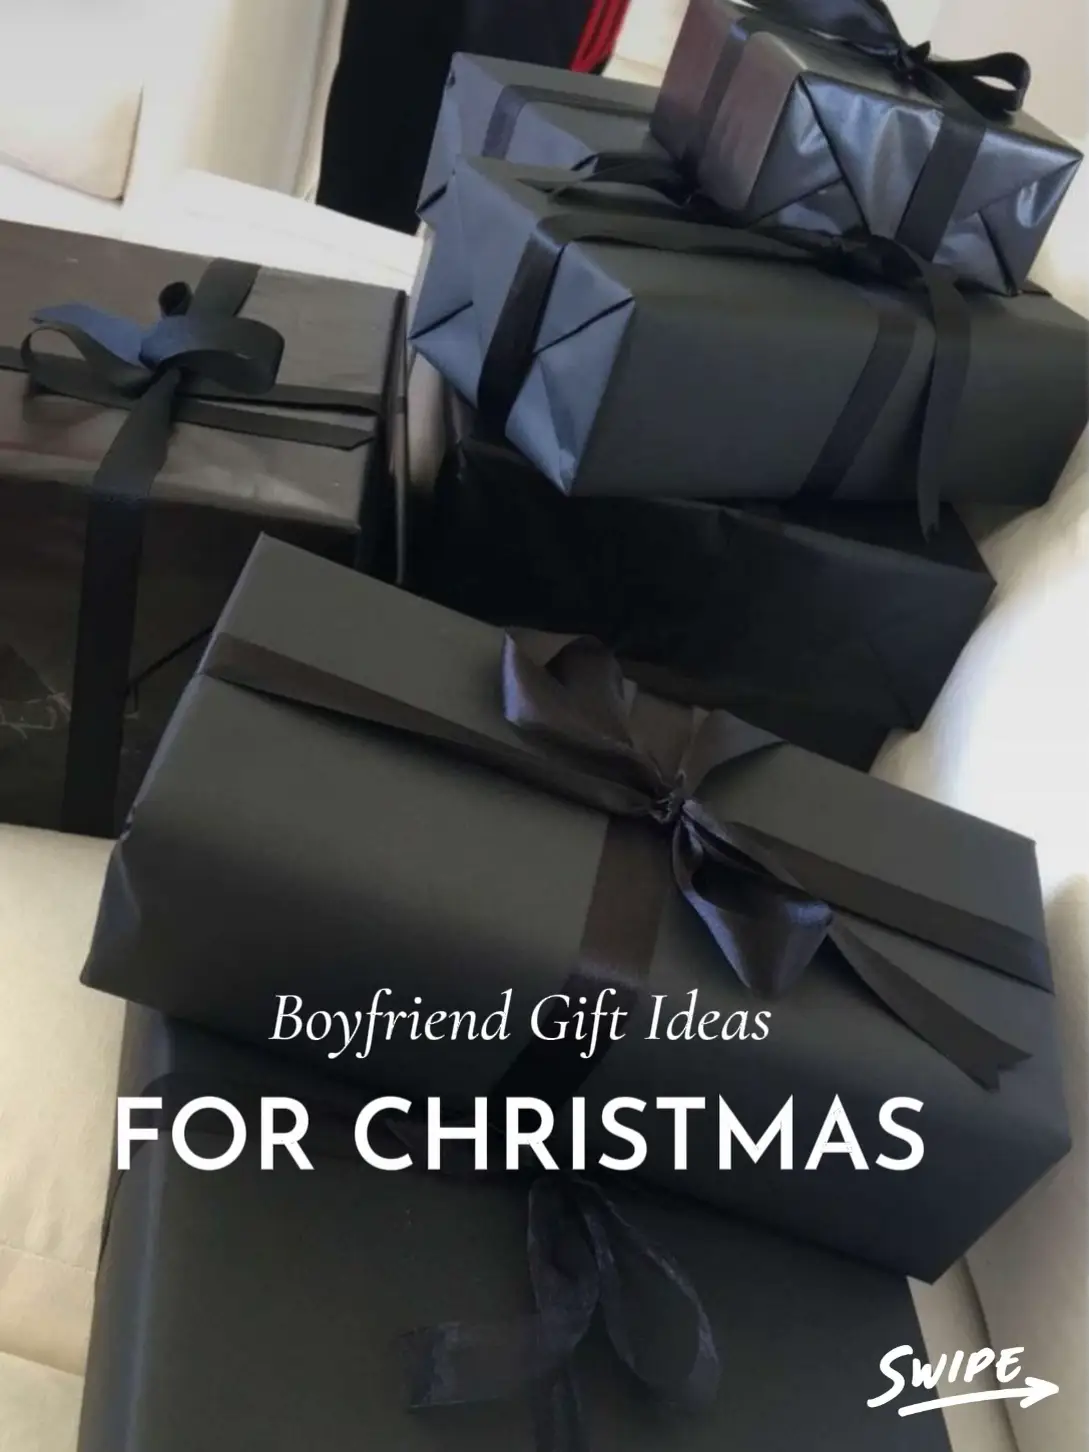 boyfriend gift ideas, Gallery posted by kiera louise